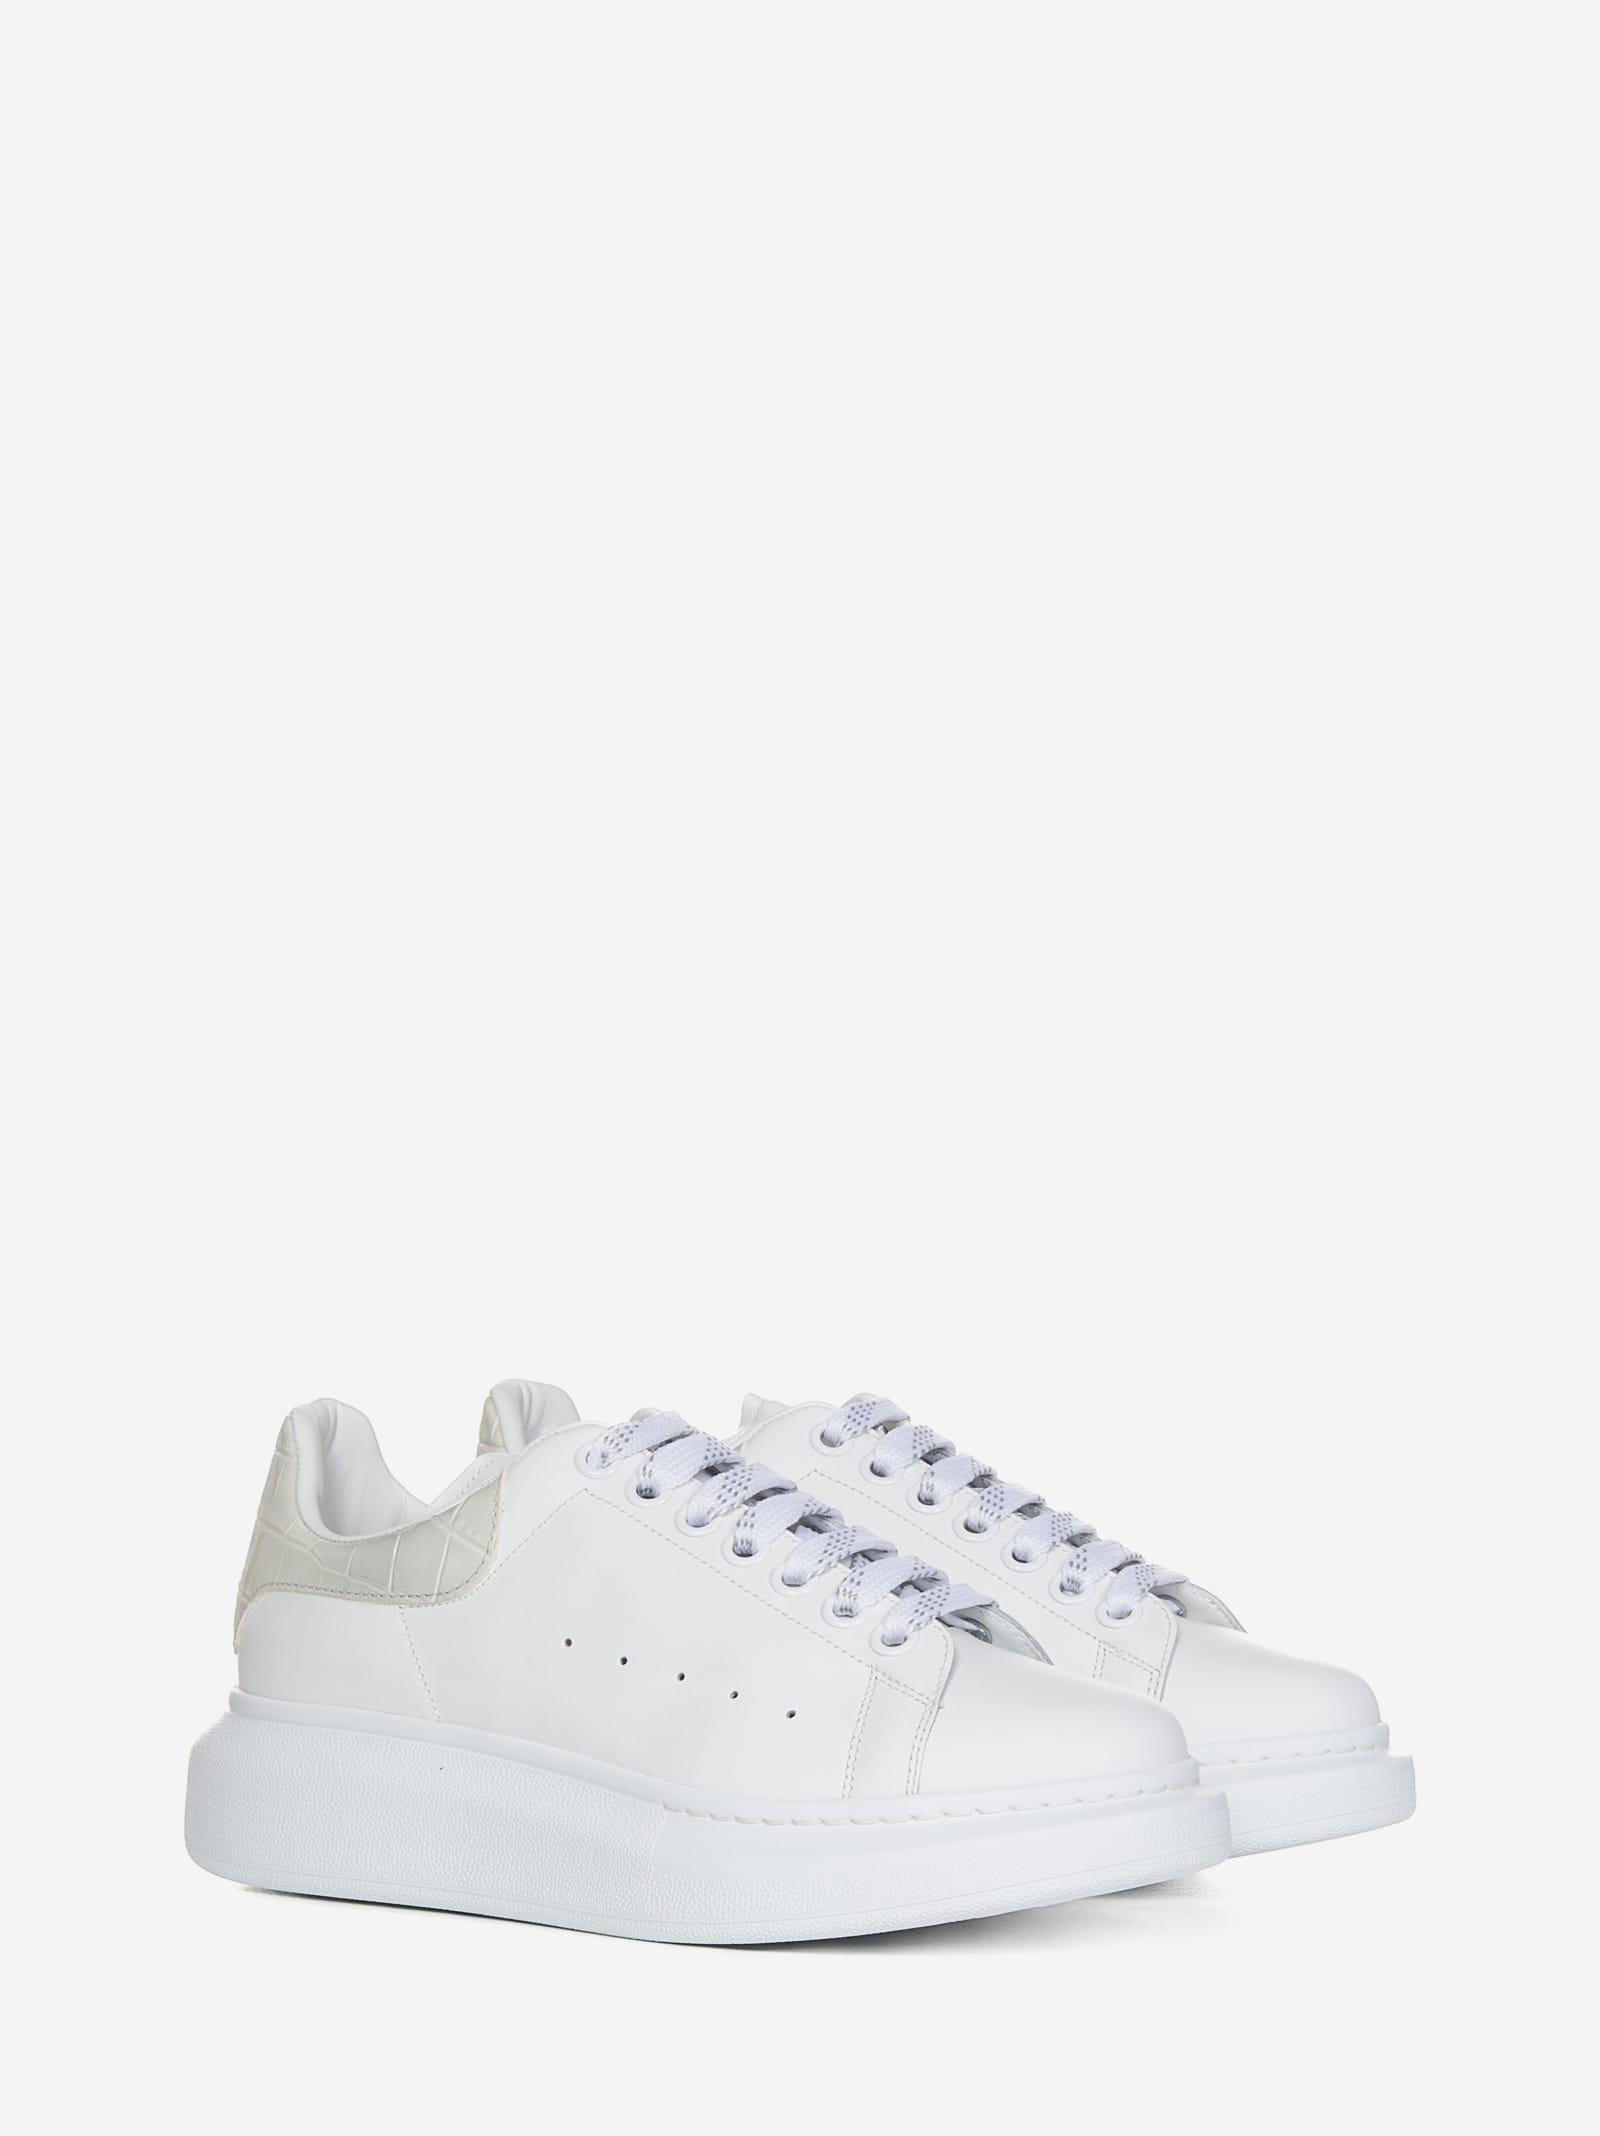 Alexander McQueen Oversize Sneakers in White | Lyst